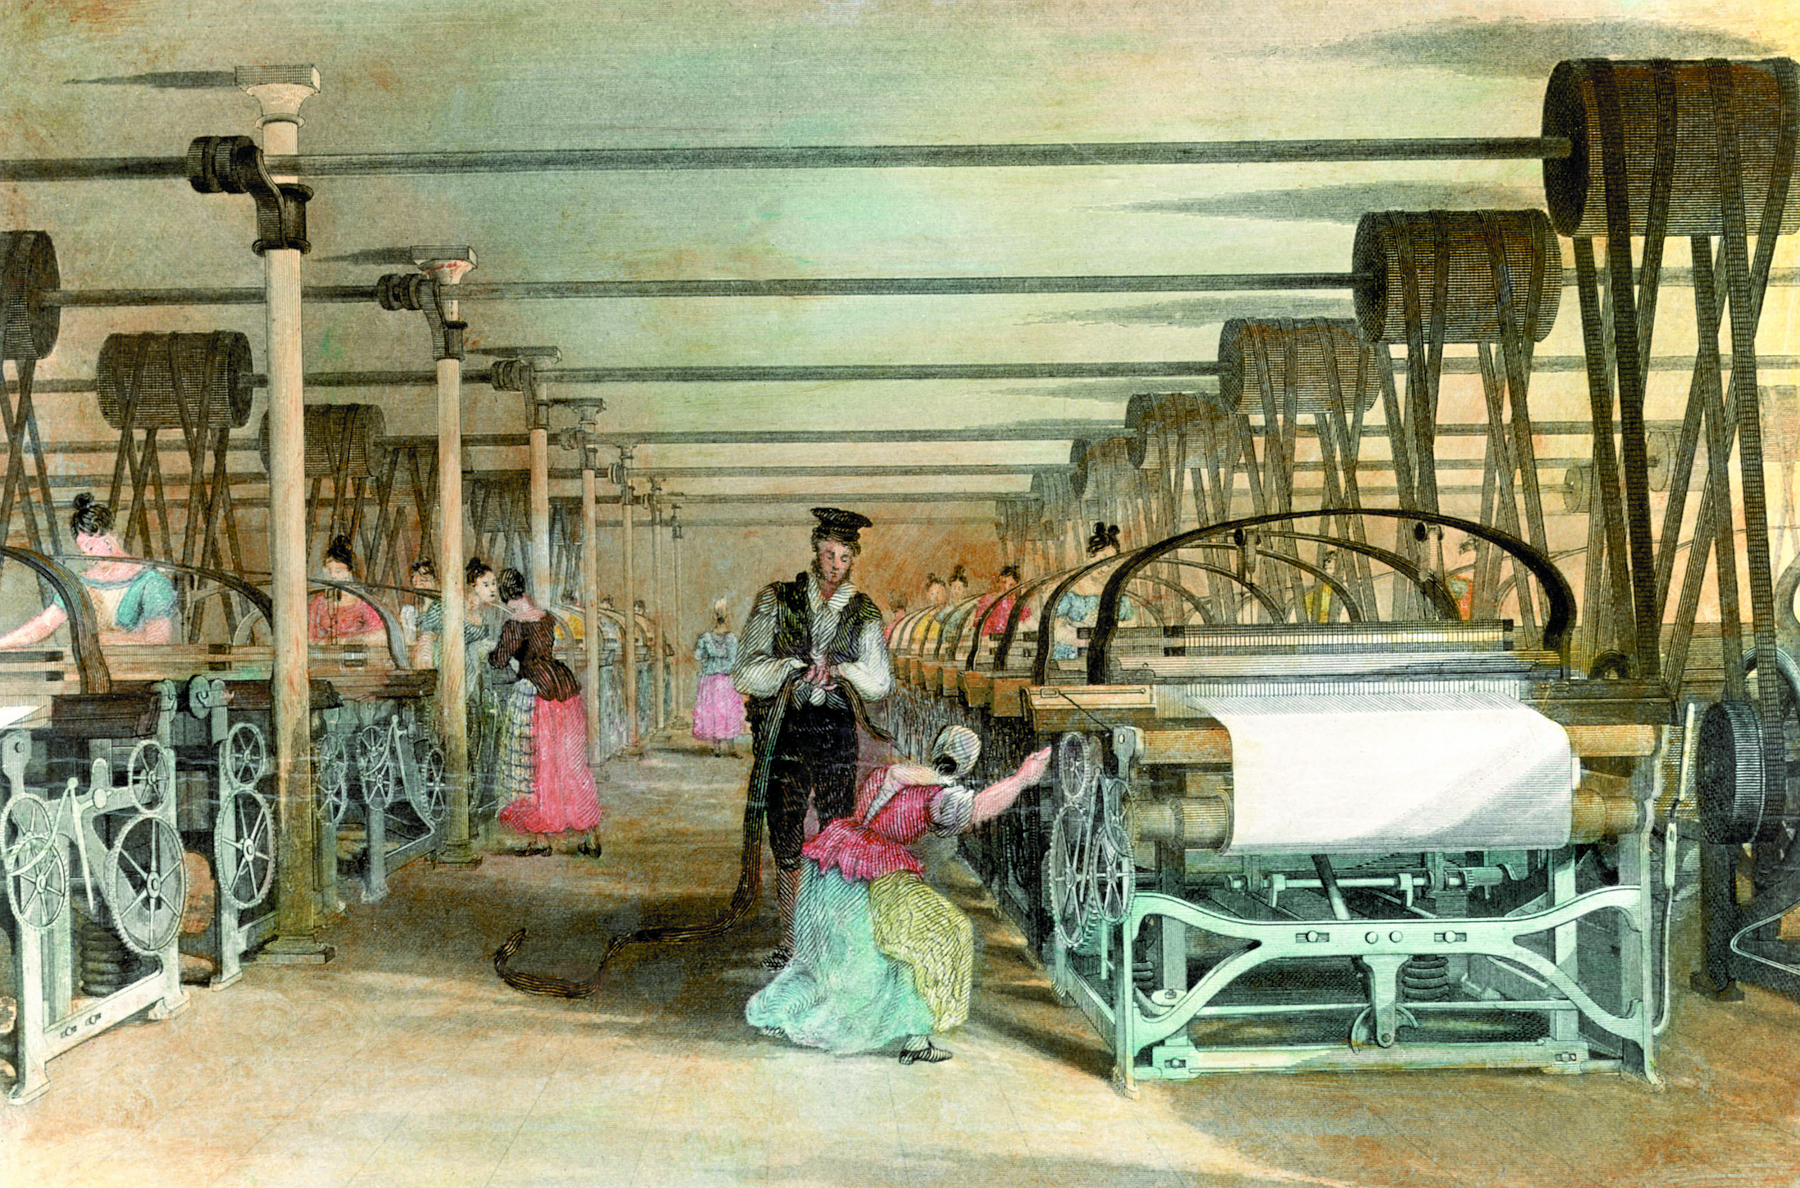 Gravura. Mulheres trabalhando em uma tecelagem. Grandes máquinas com tecidos estão alinhadas em duas filas, uma de cada lado da gravura. Em cada máquina, uma mulher. À frente, uma mulher está abaixada ao lado da máquina. Perto dela, um homem em pé.